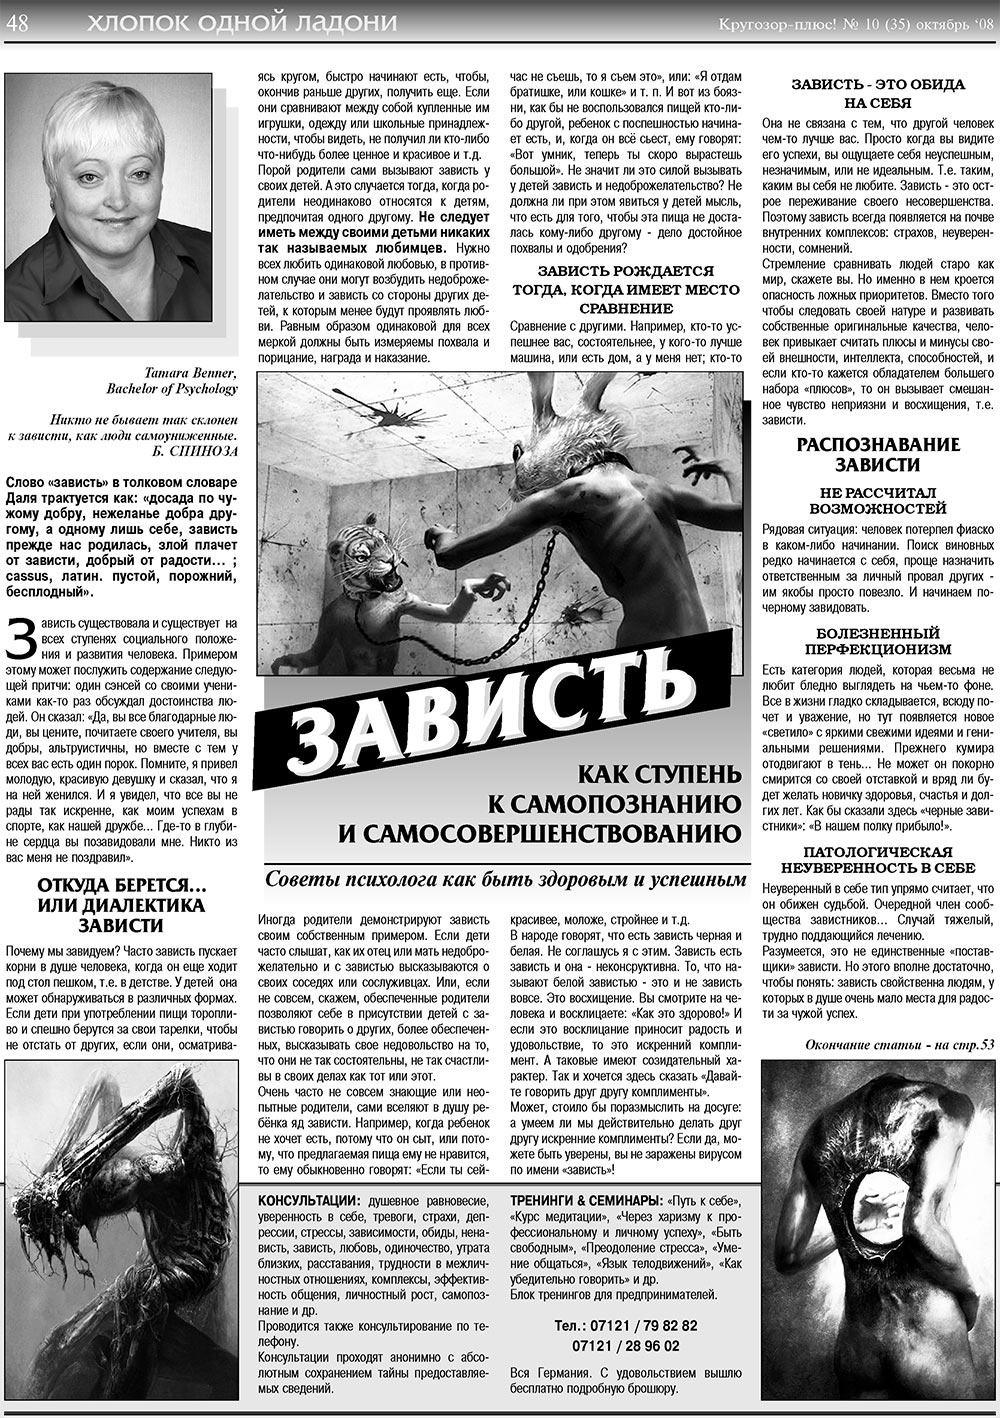 Кругозор плюс!, газета. 2008 №10 стр.48